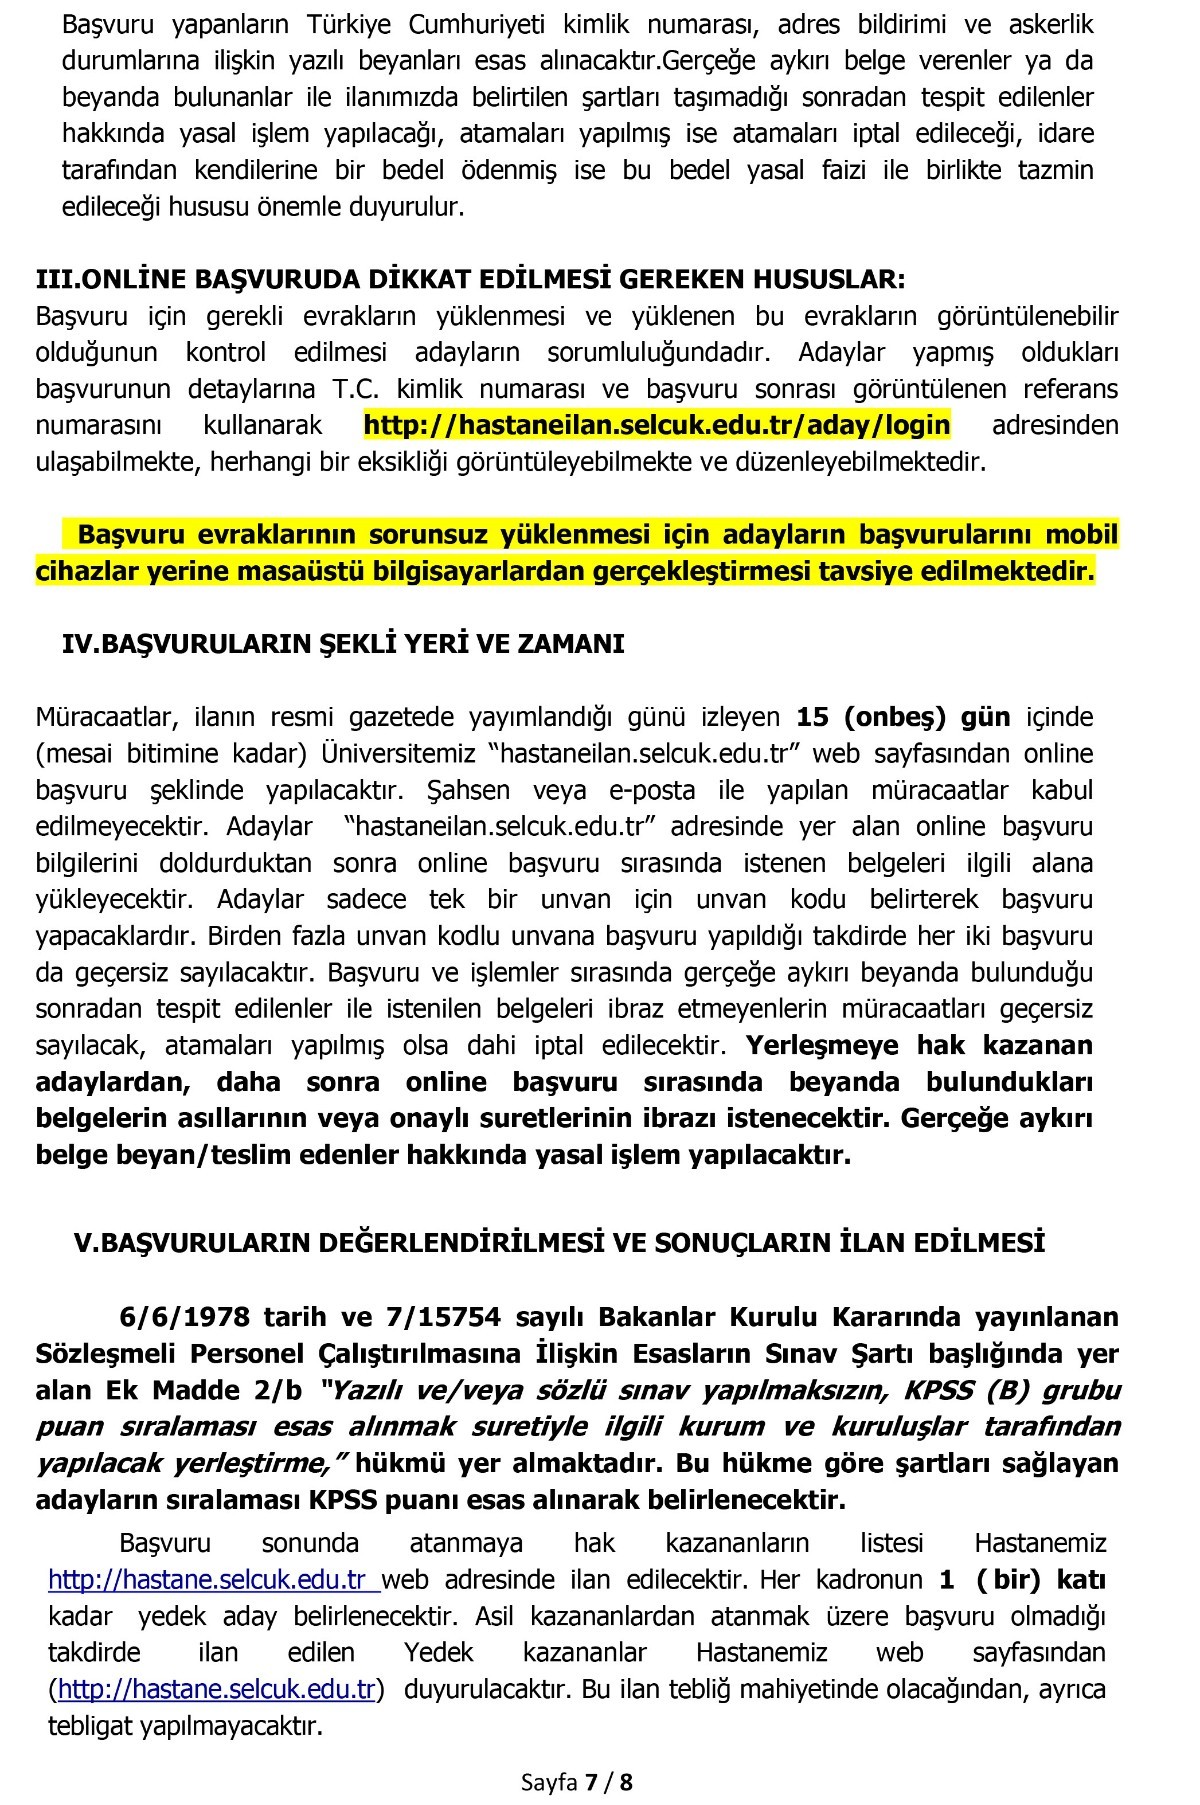 Konya Selçuk Üniversitesi 93 sözleşmeli personel alımı